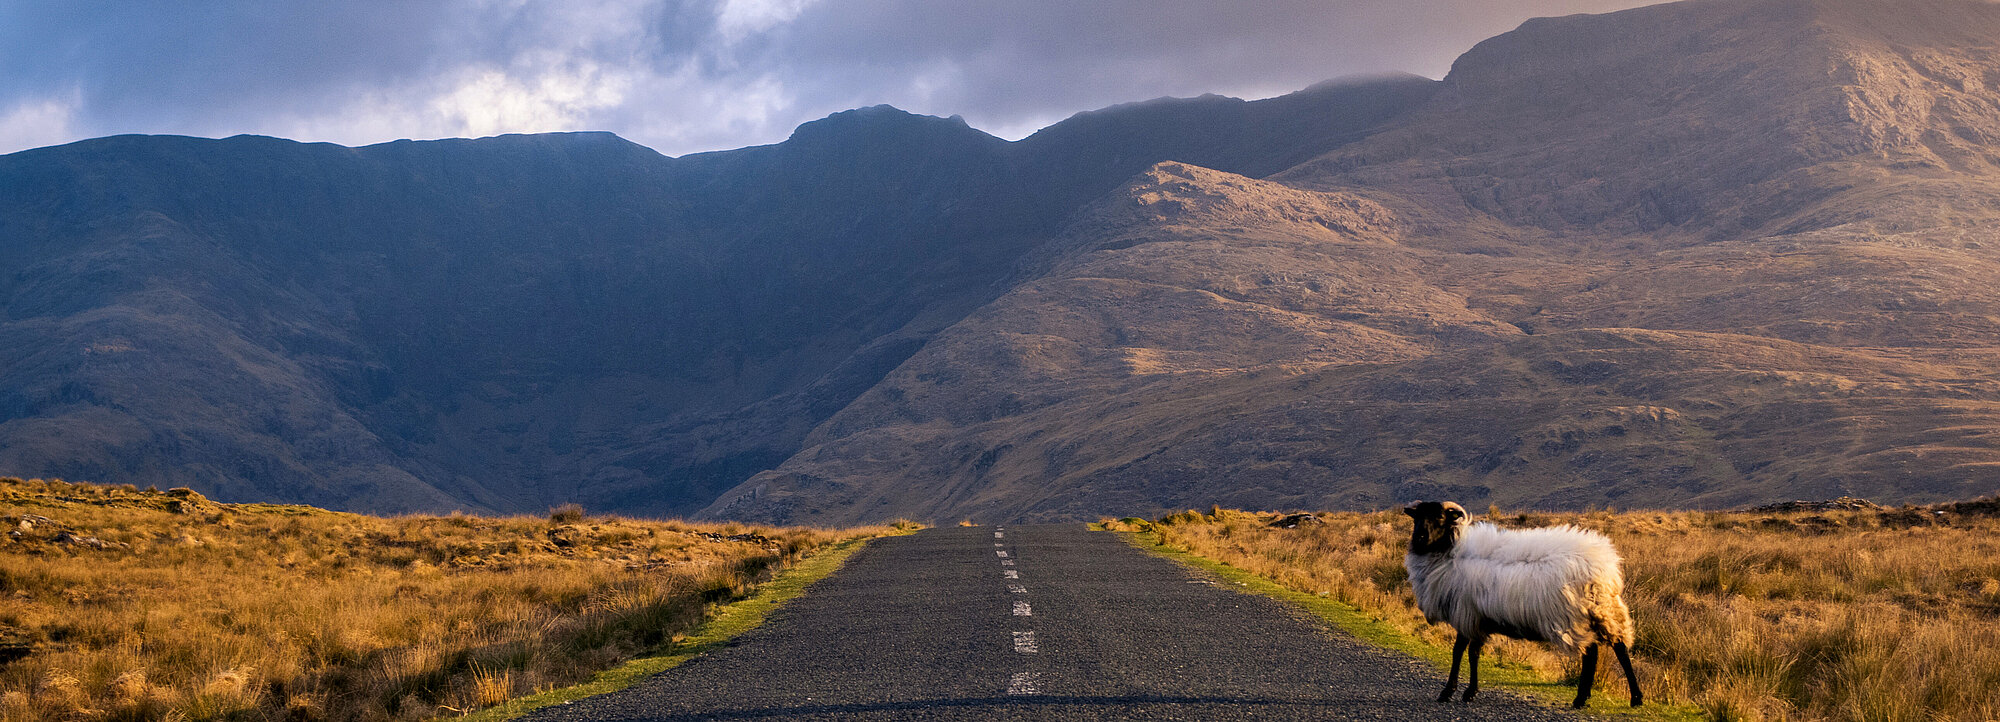 Entdecken Sie die traumhafte Landschaft Connemaras in Ihrem Irland Urlaub